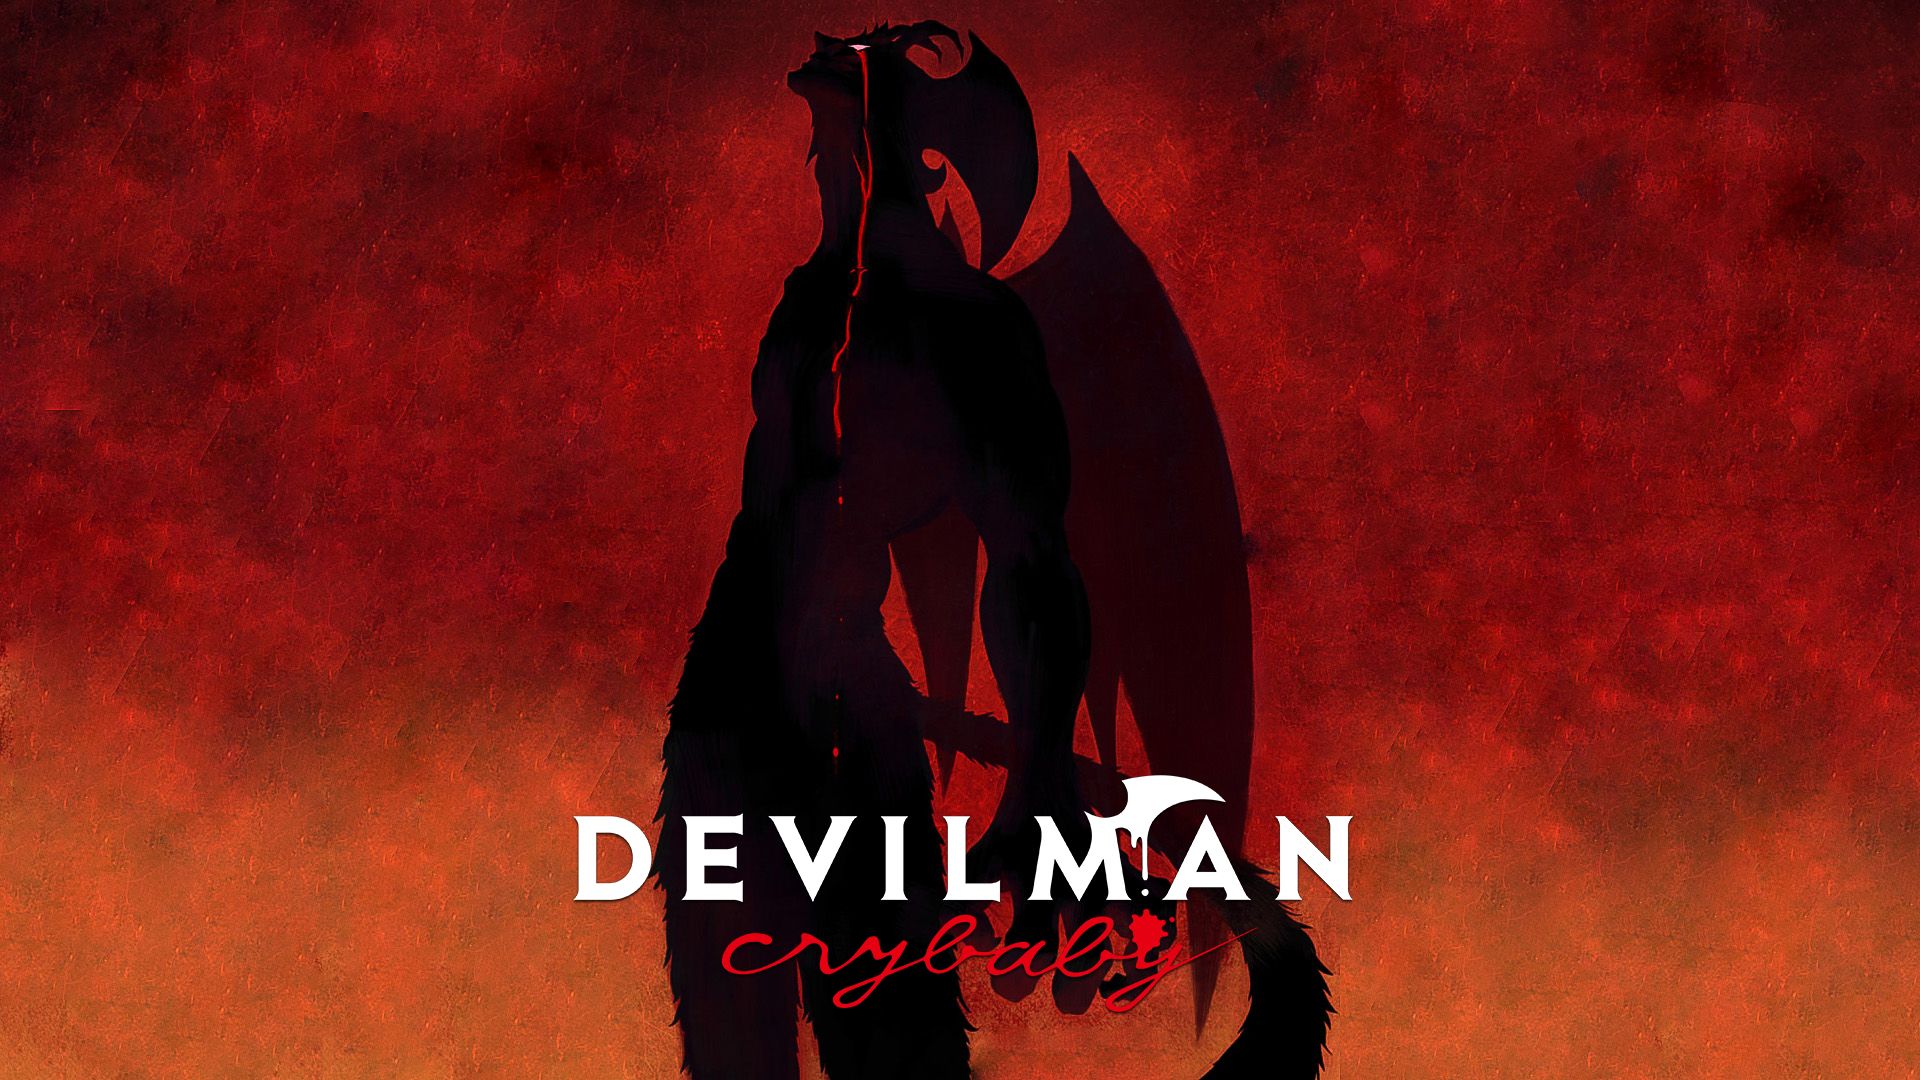 Melhores papéis de parede de Devilman: Crybaby para tela do telefone